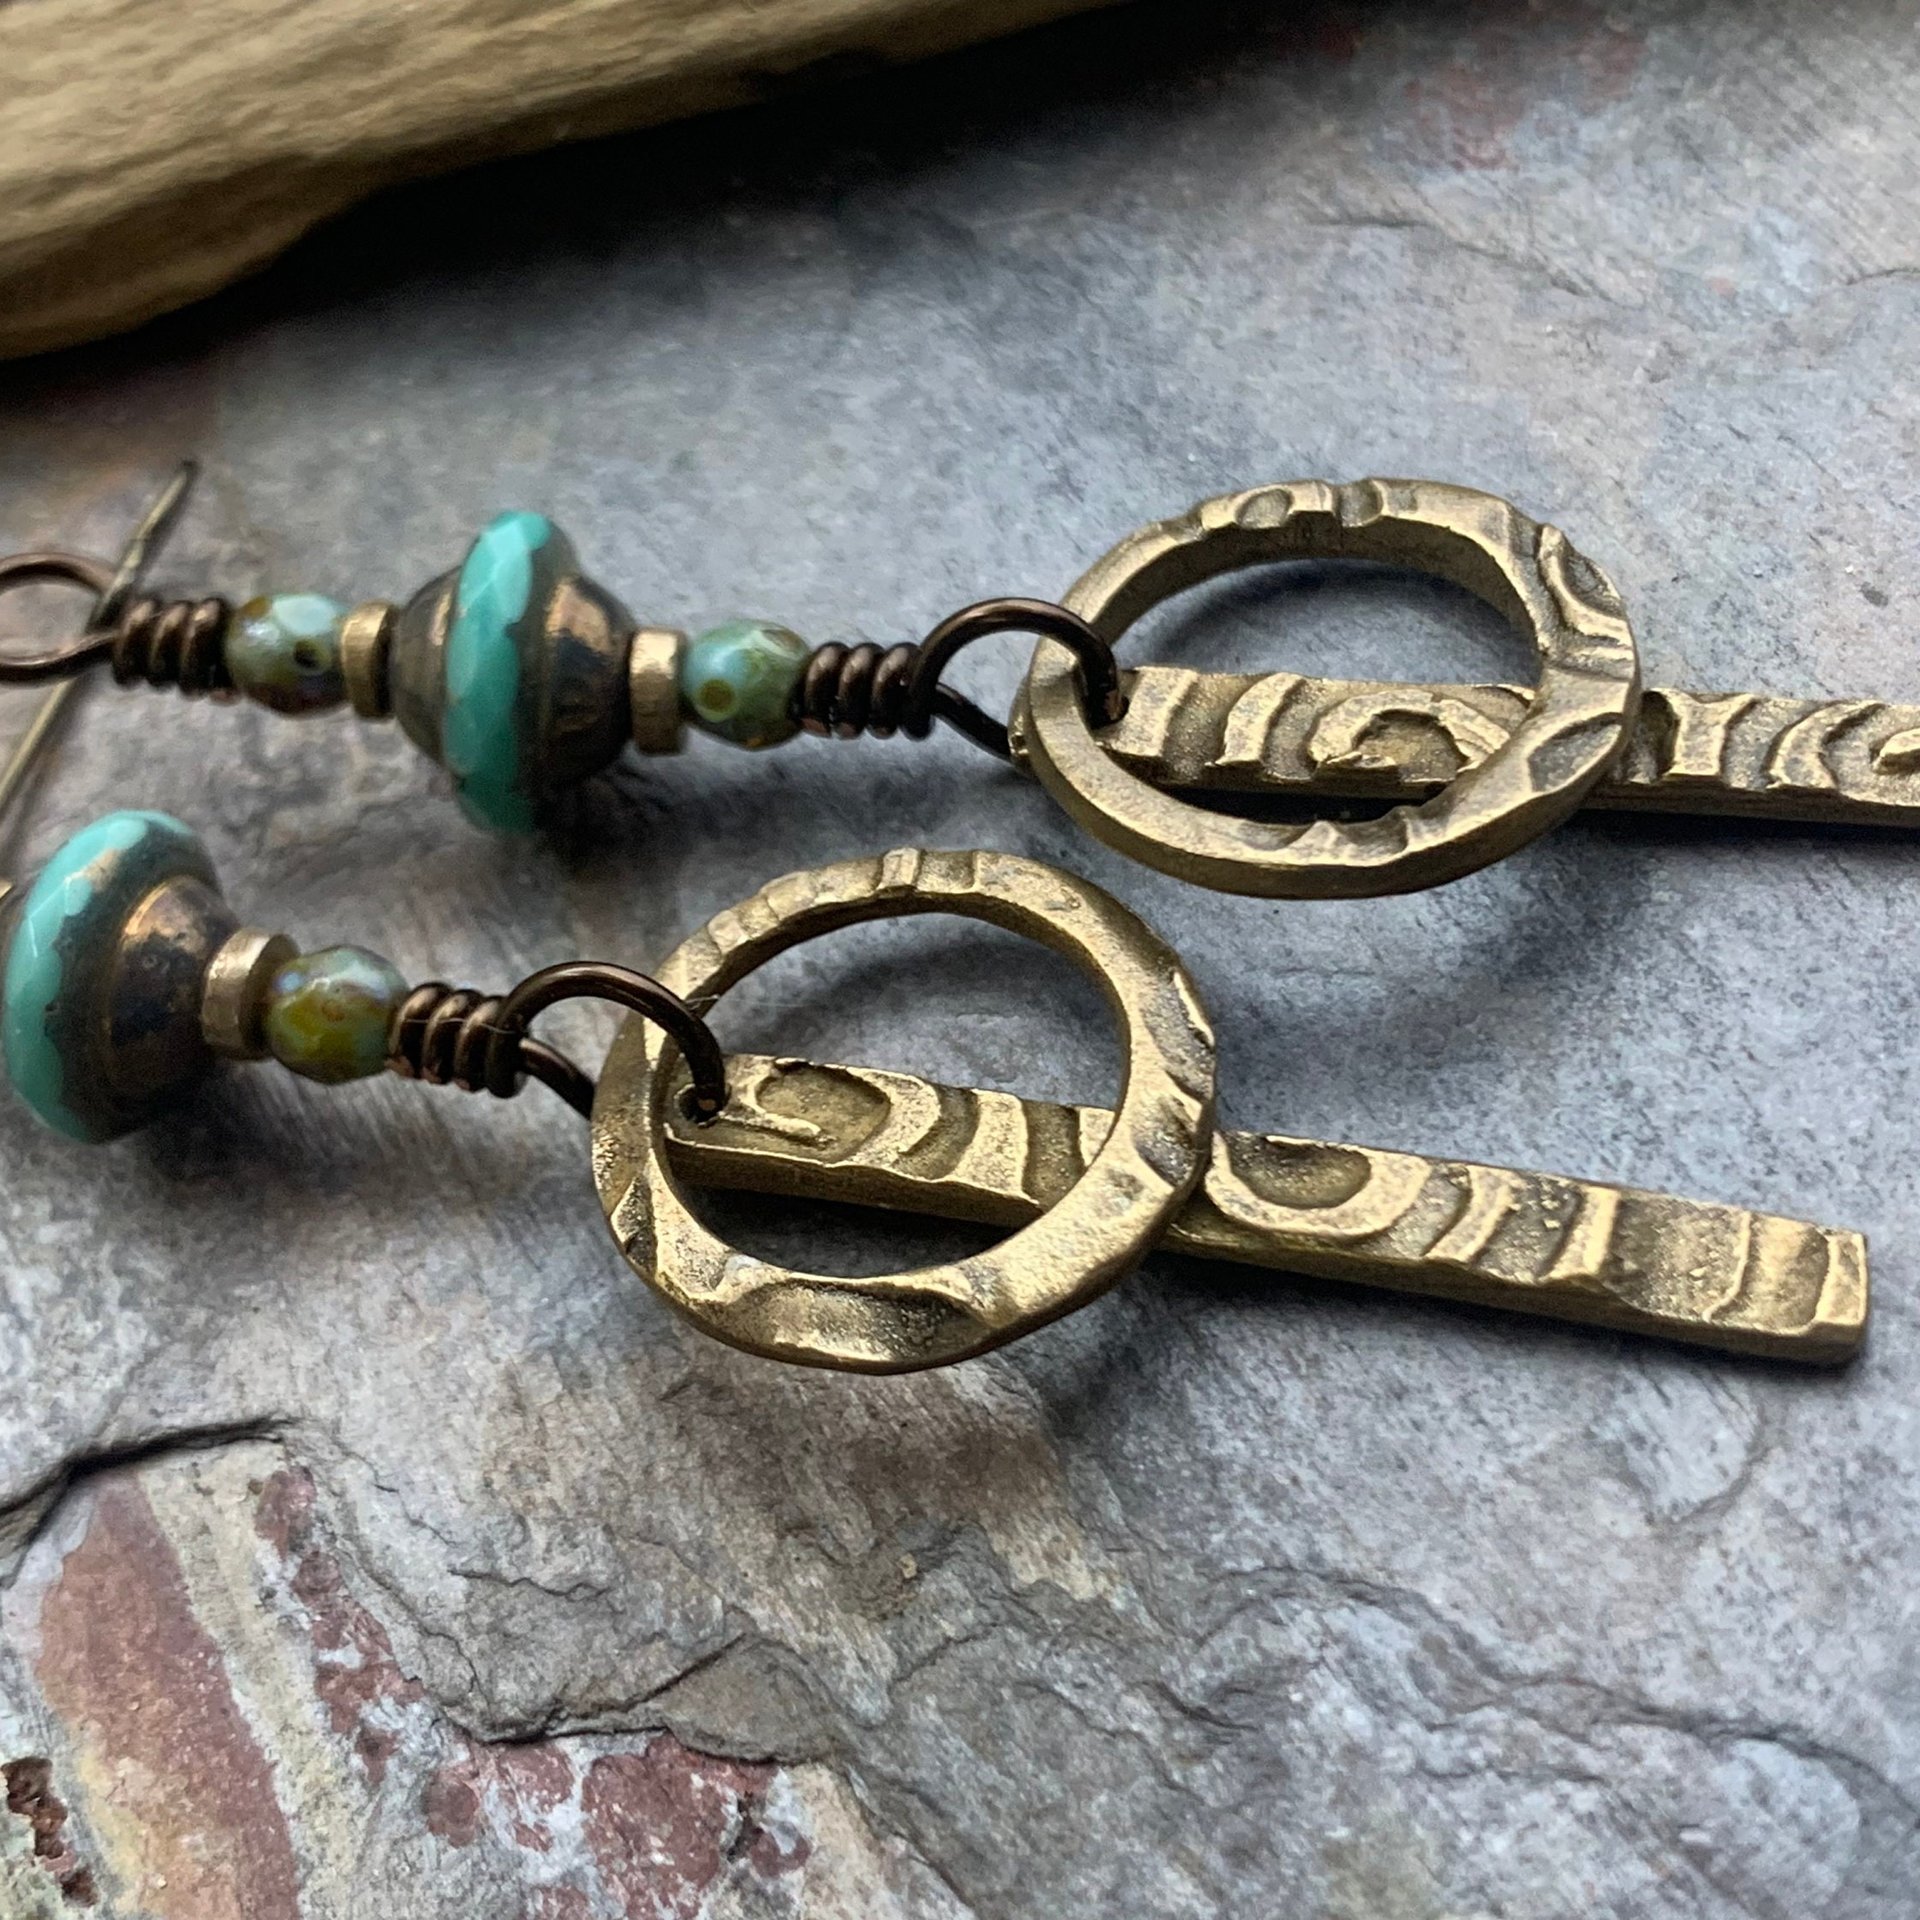 Bronze Hoop Earrings, Skinny Stick Earrings, Czech Glass Beads, Celtic Spirals, Bronze & Turquoise, Boho Earthy Art Jewelry, Handmade